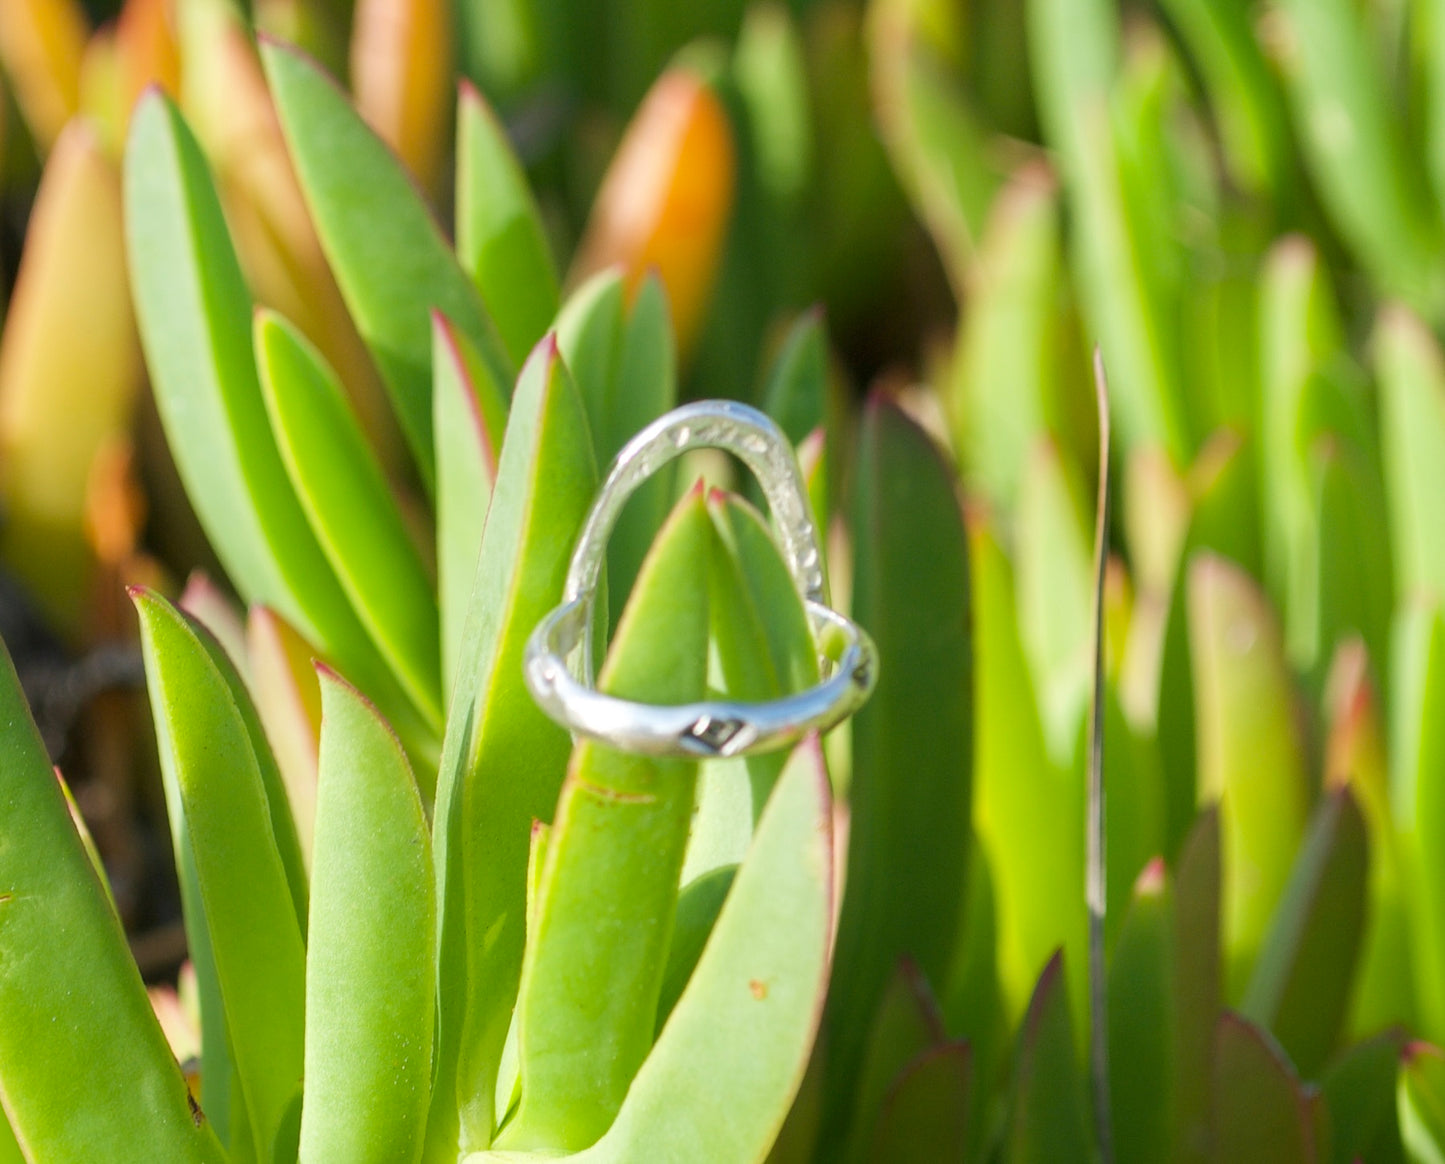 Large Organic Turquoise Ring